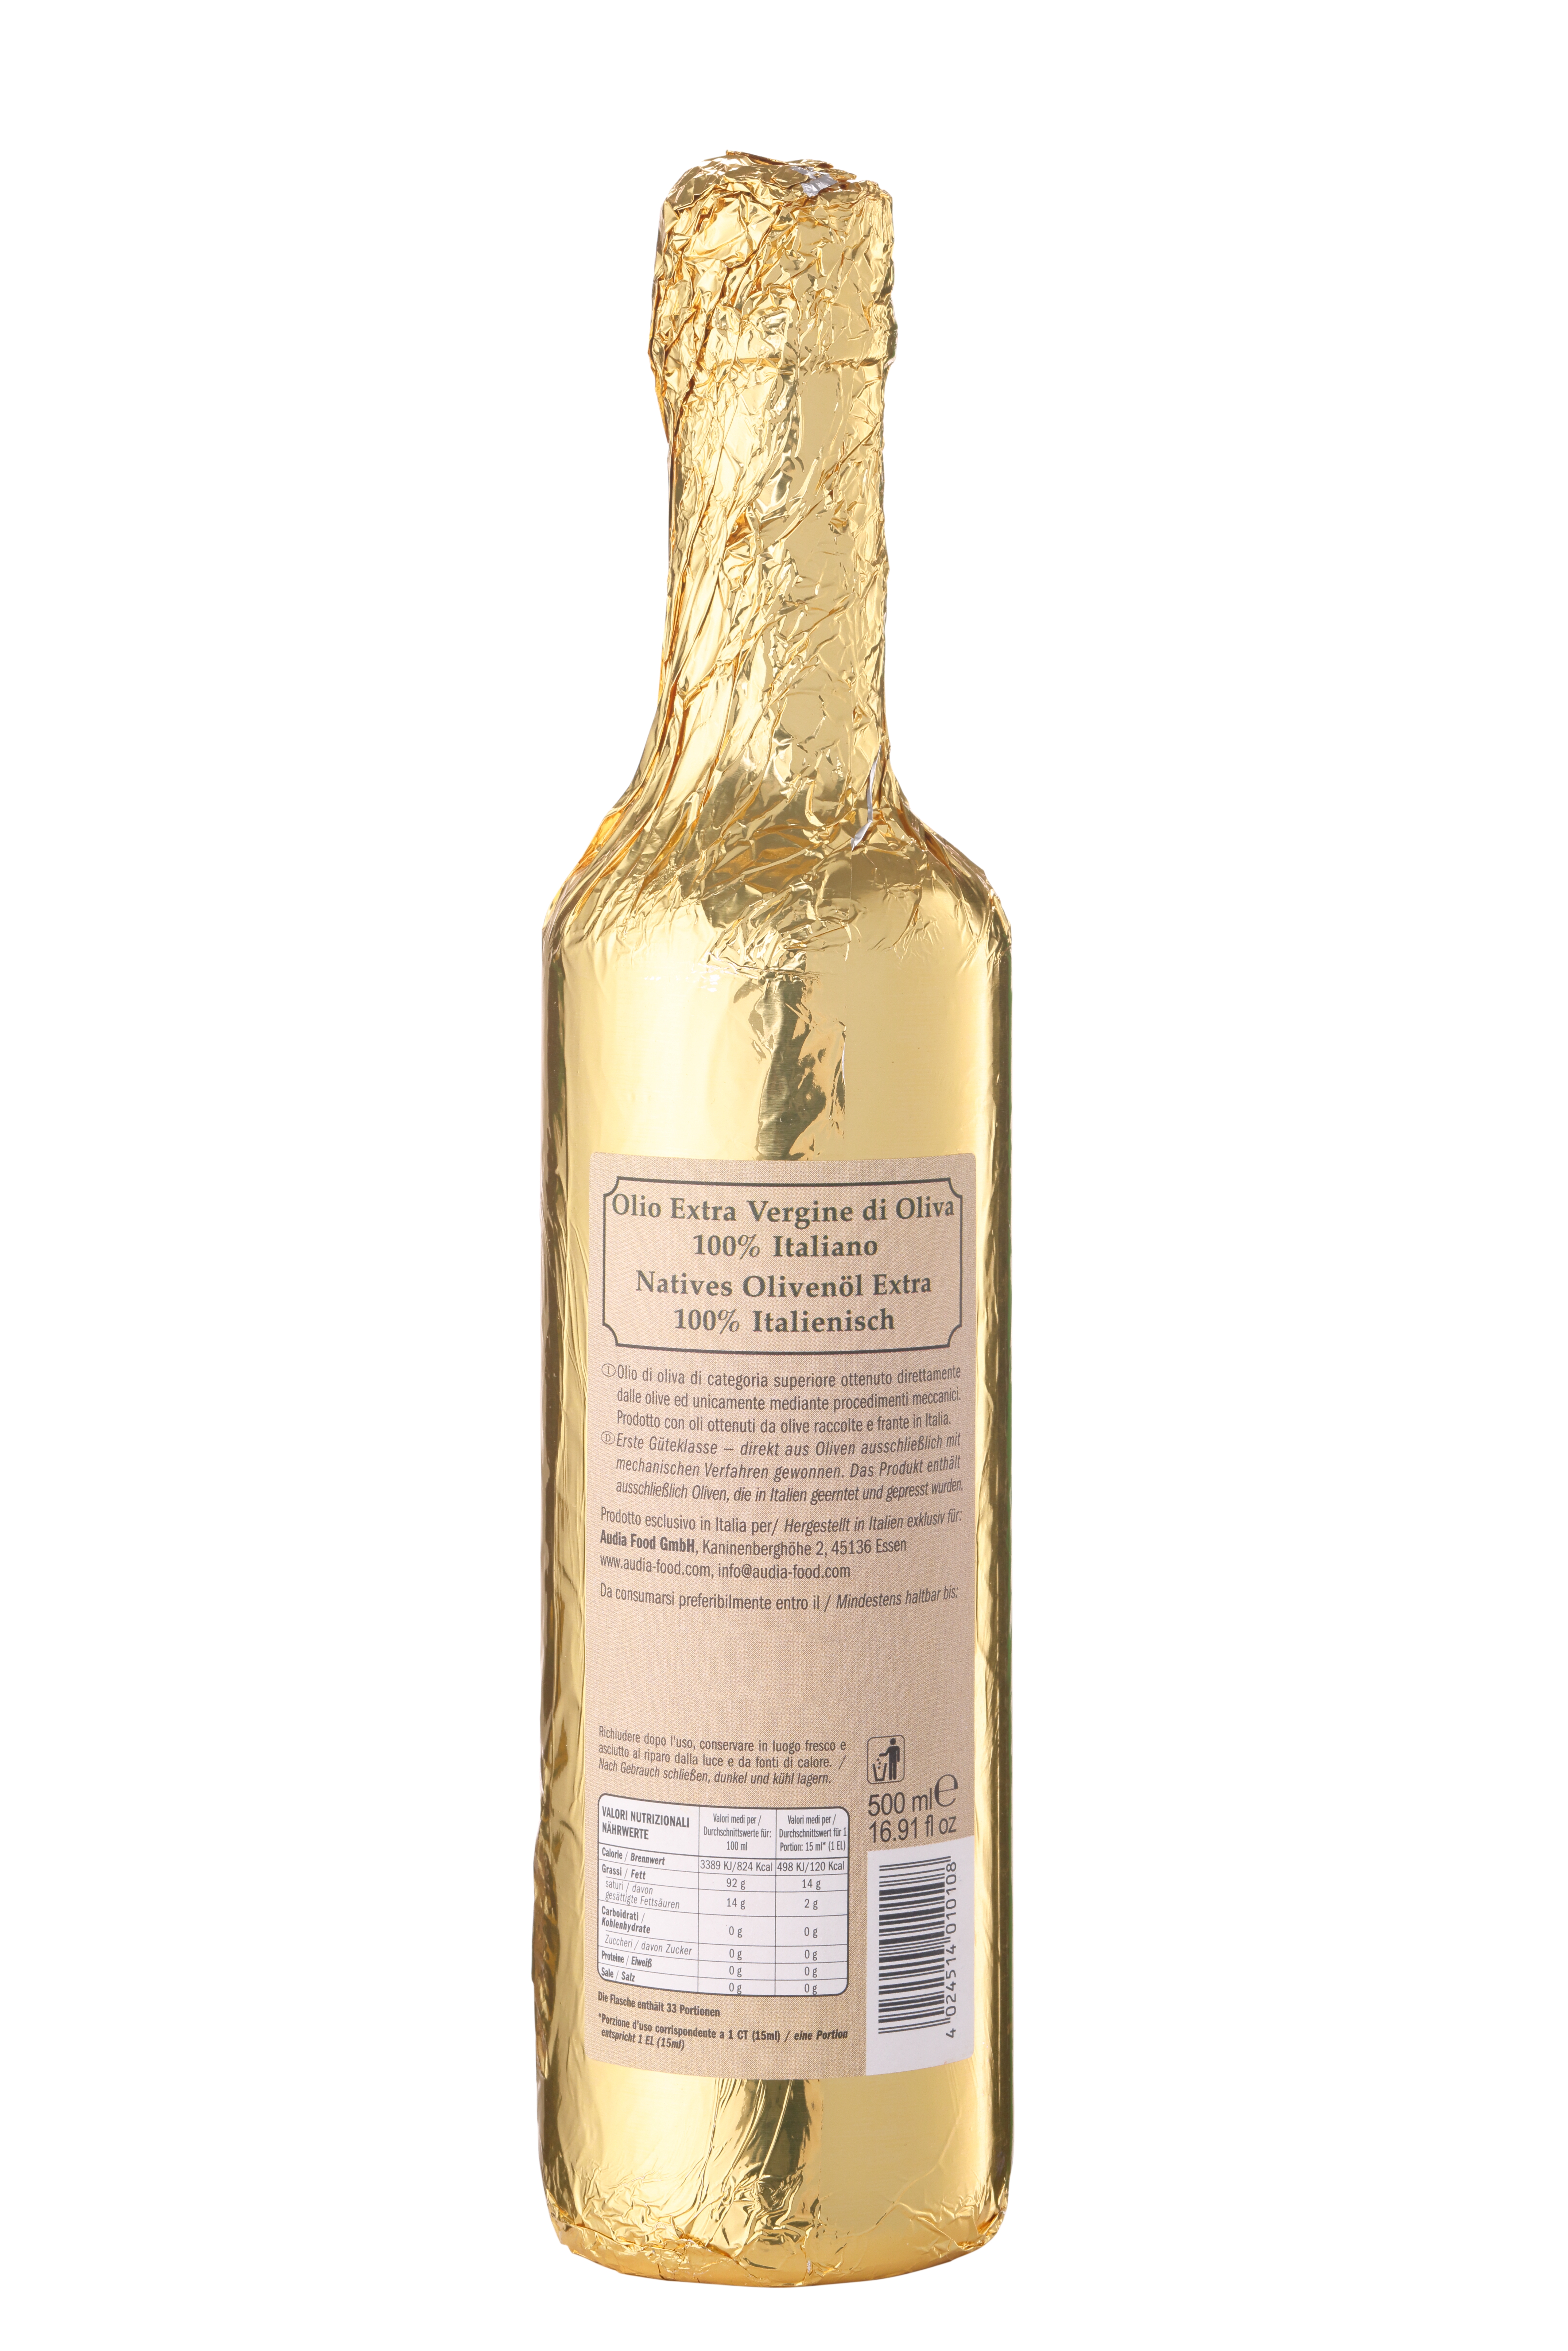 Minato, Natives Olivenöl Extra "Gold", 100% Italienisch, 500ml